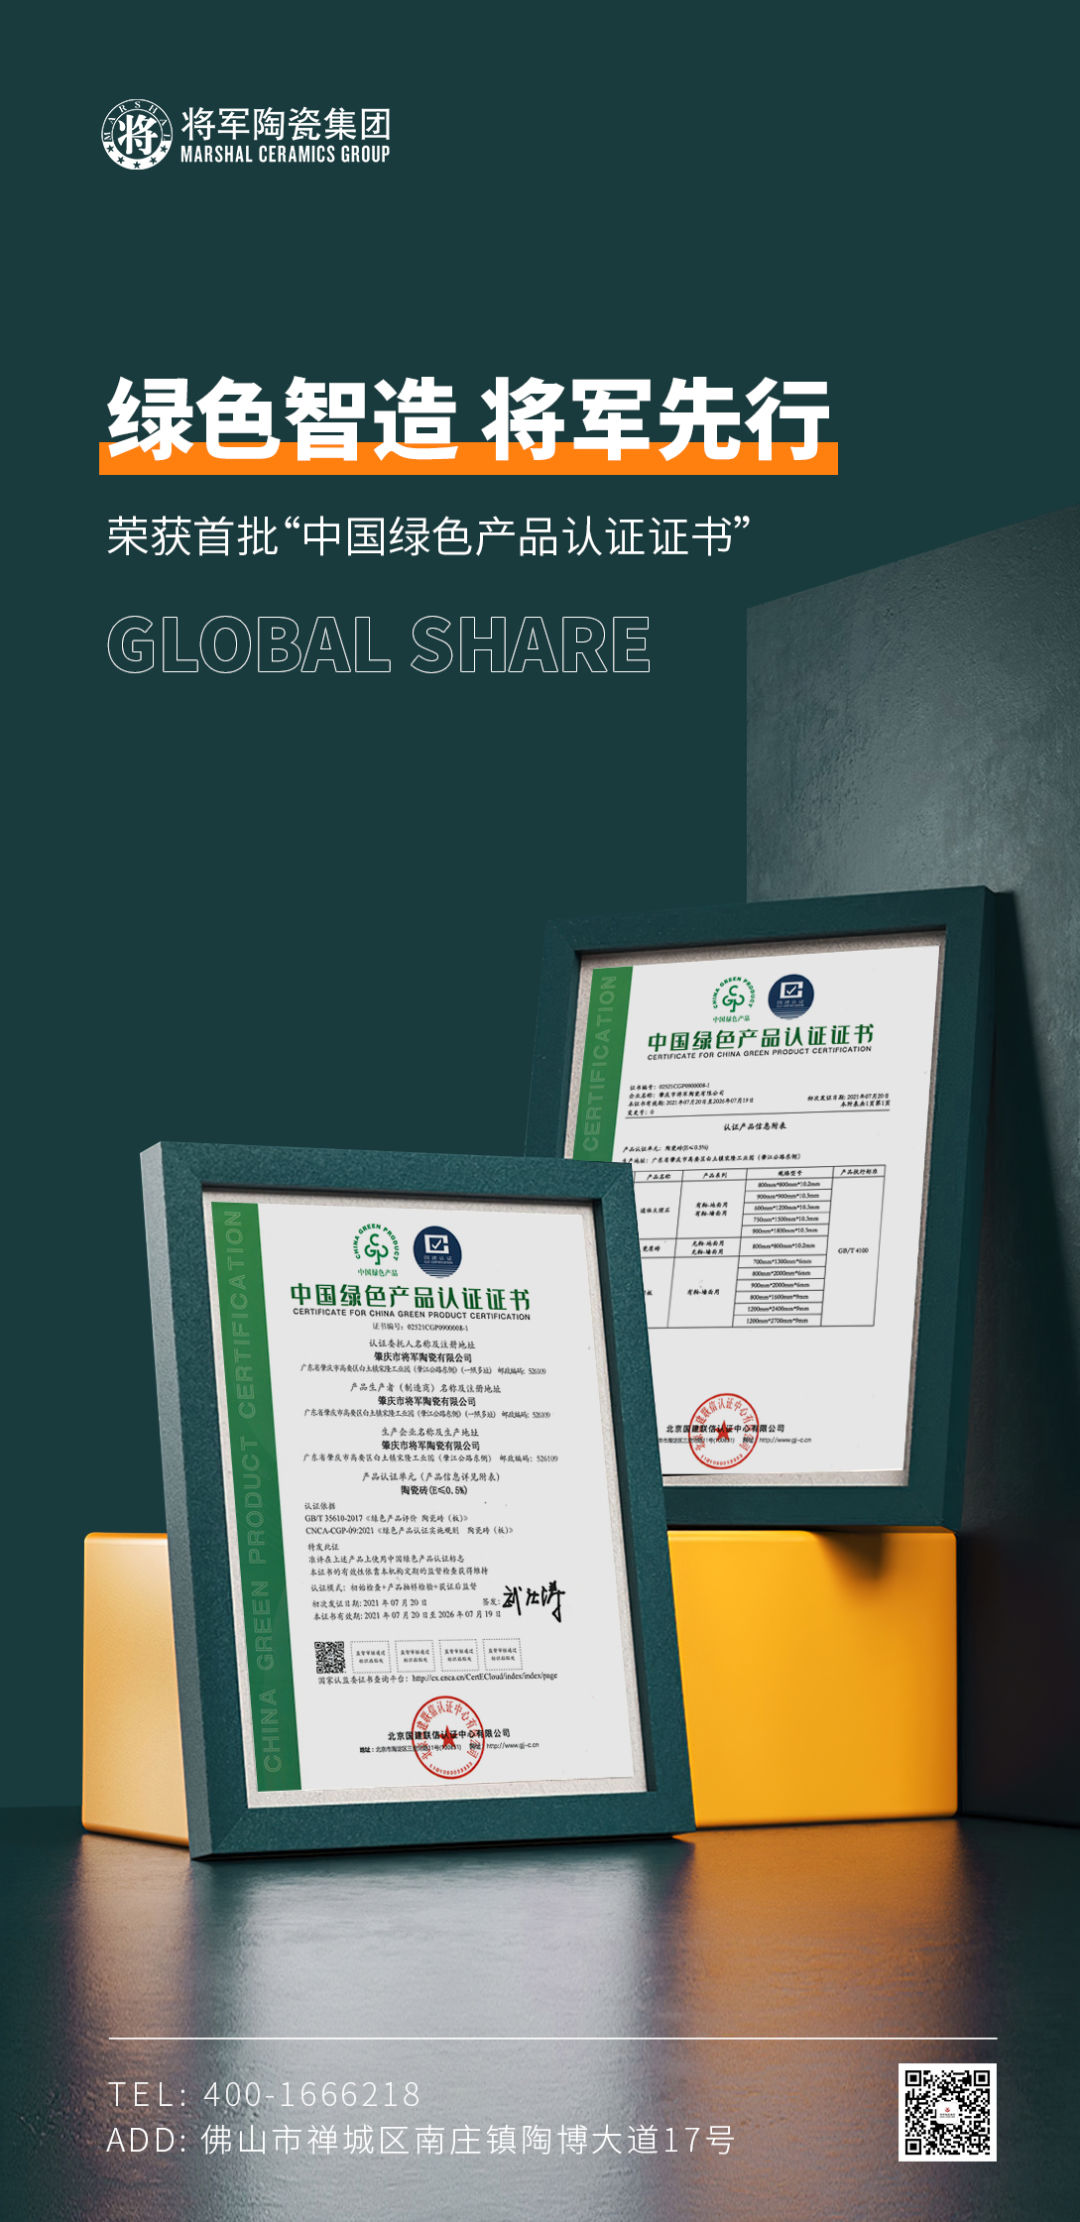 绿色智造 将军先行 | 将军陶瓷集团成为首批“中国绿色产品认证”企业(图2)